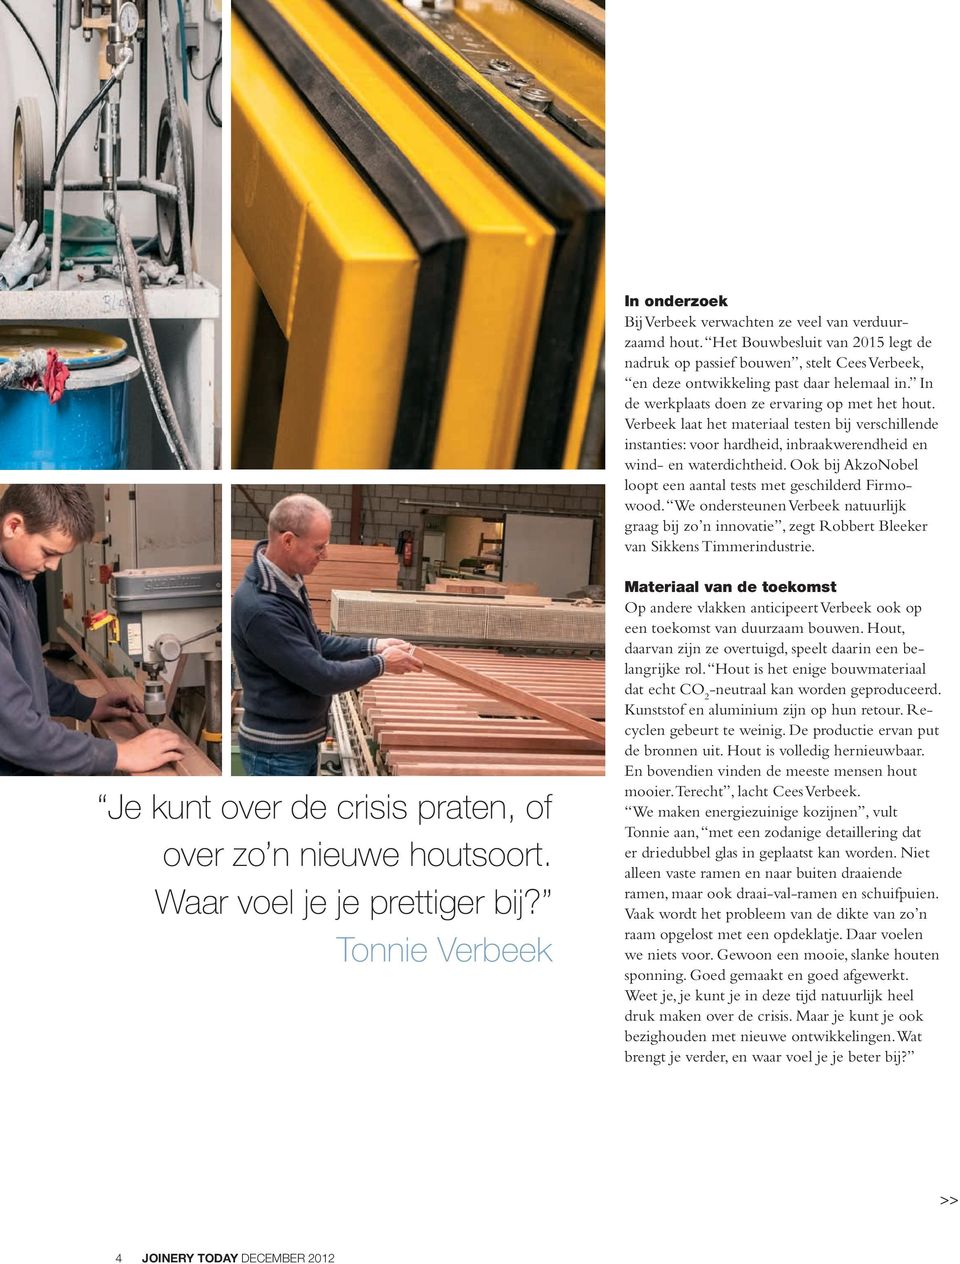 Ook bij AkzoNobel loopt een aantal tests met geschilderd Firmowood. We ondersteunen Verbeek natuurlijk graag bij zo n innovatie, zegt Robbert Bleeker van Sikkens Timmerindustrie.